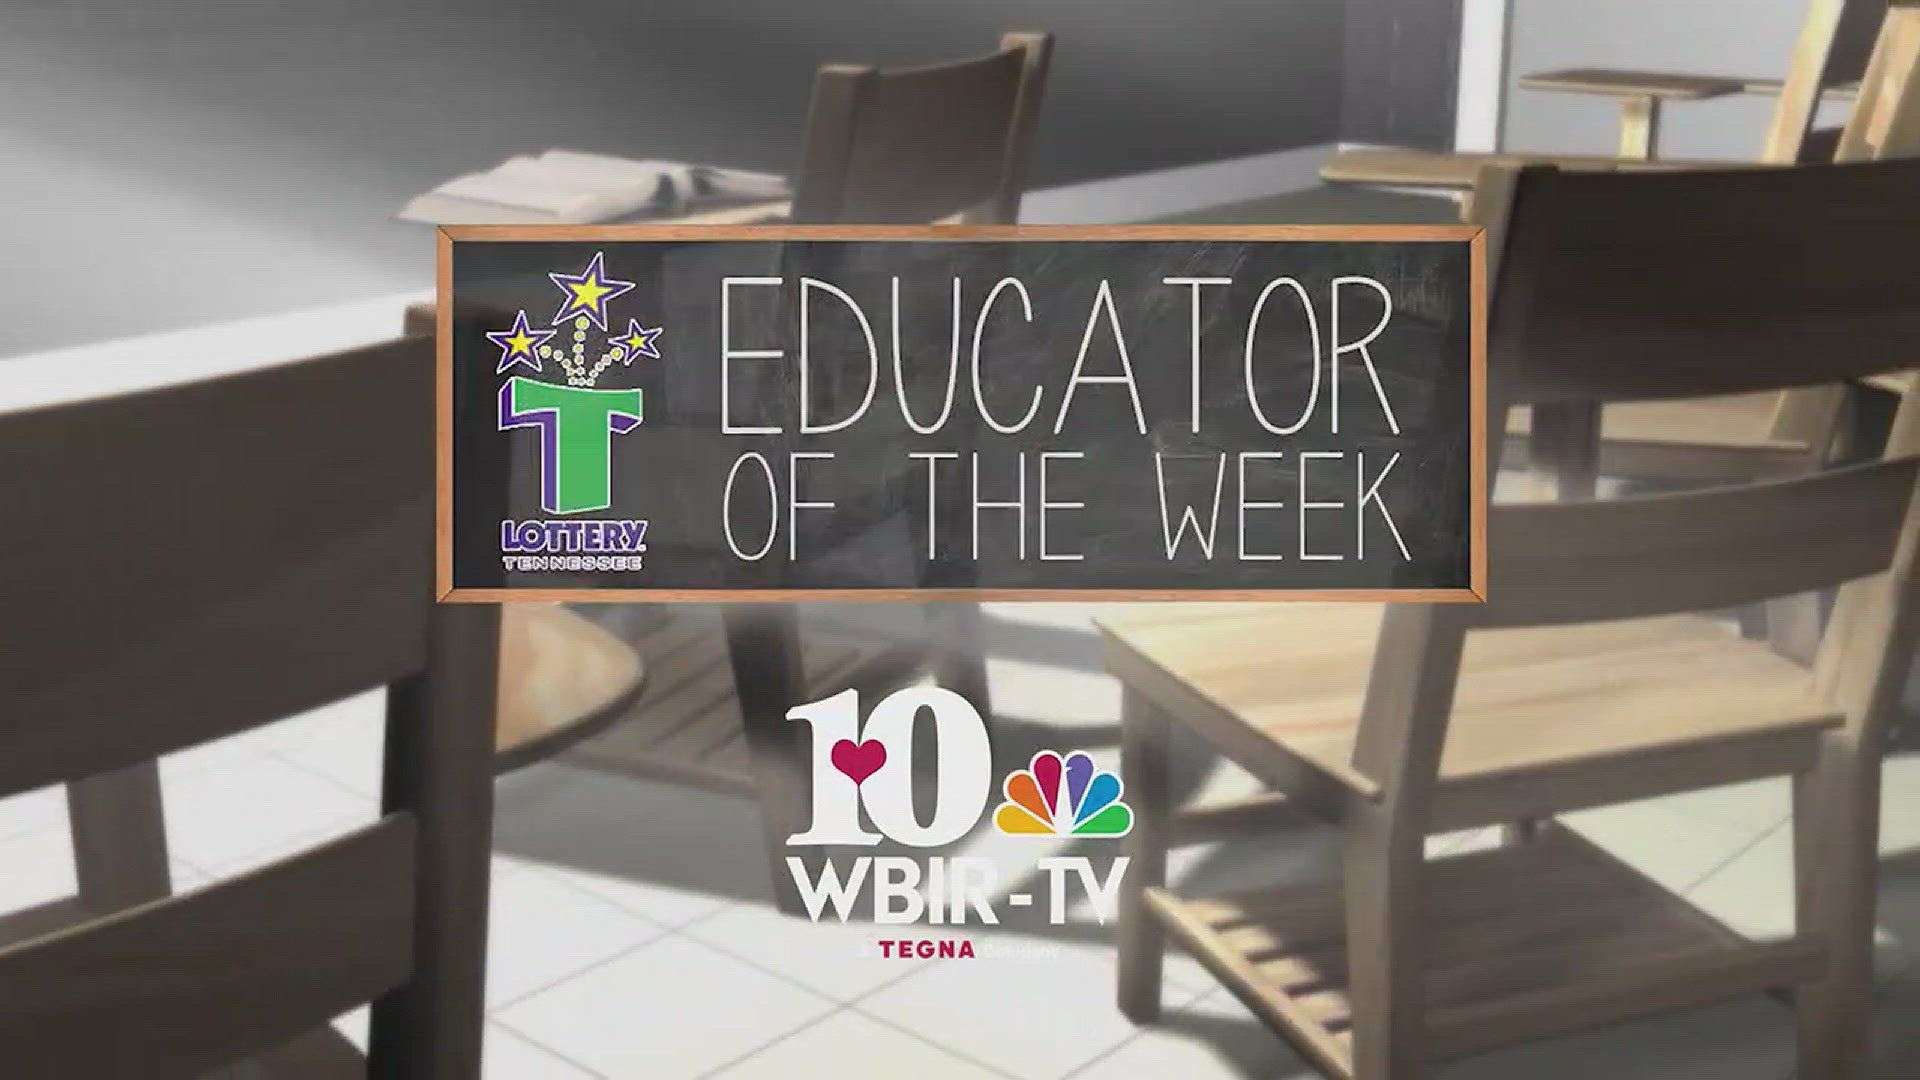 The educator of the week 10/16 is Elizabeth Williams